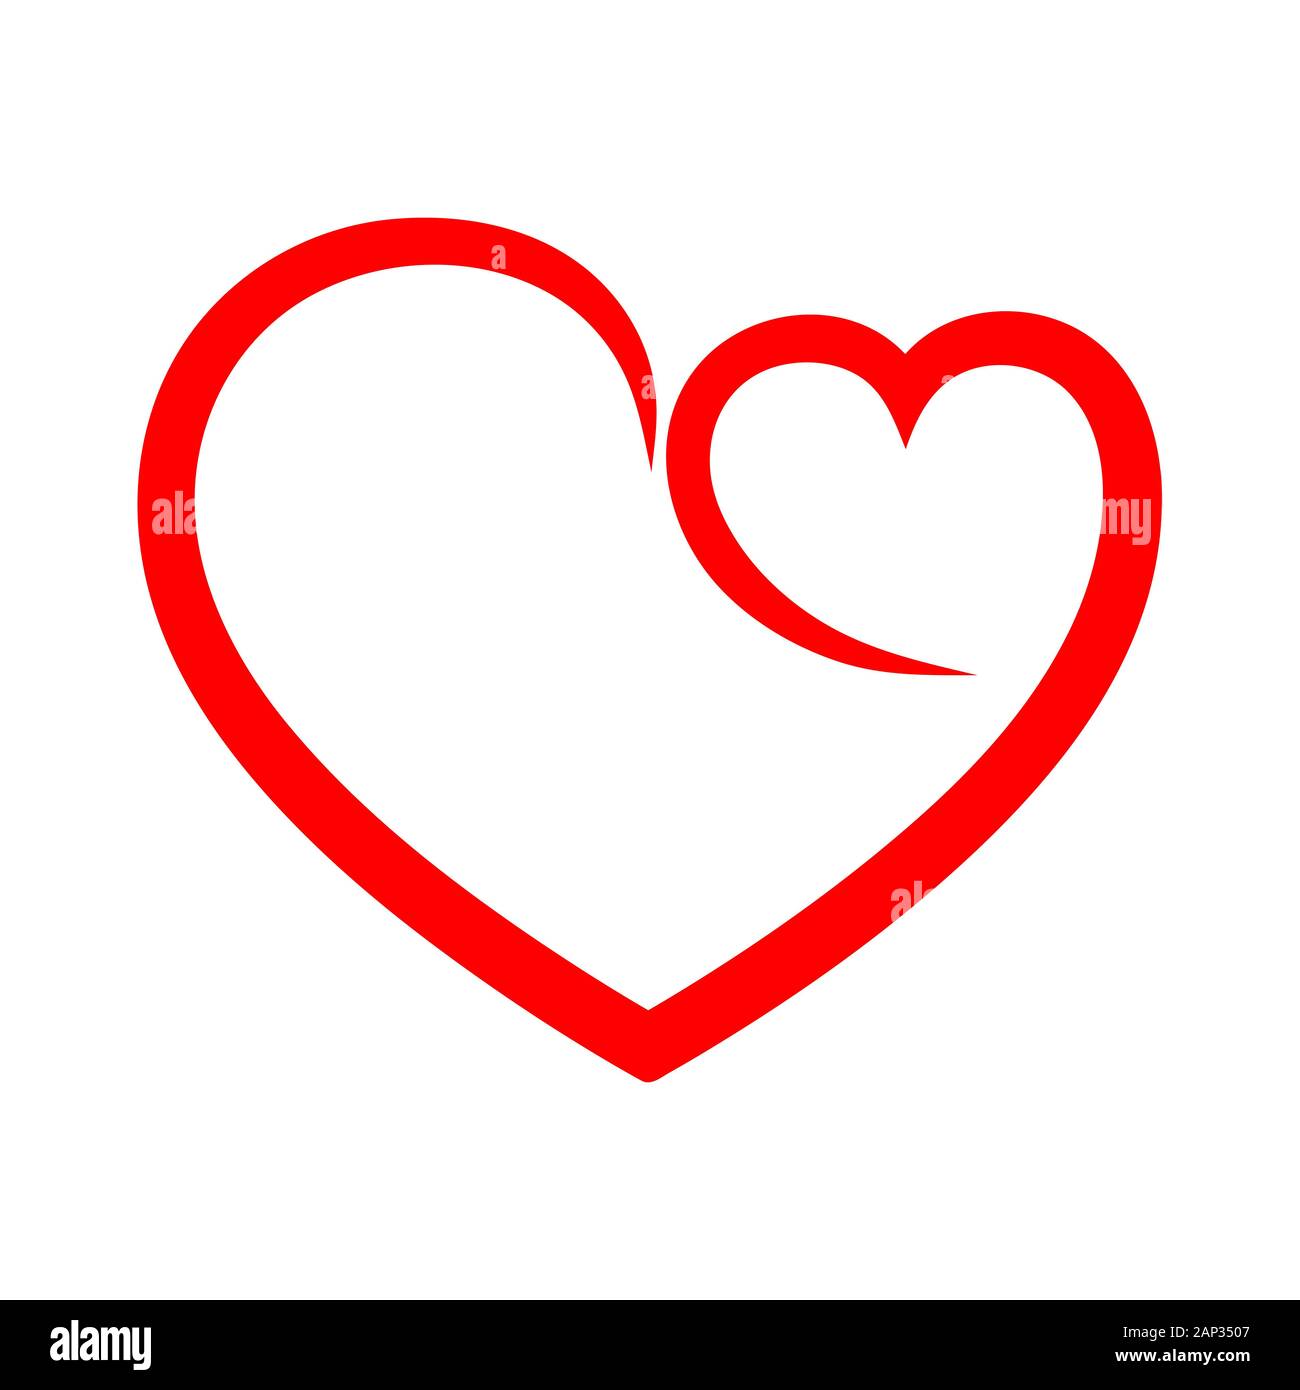 Résumé de contour de forme coeur. Vector illustration. Icône de cœur rouge en télévision style. Le coeur comme un symbole de l'amour. Illustration de Vecteur